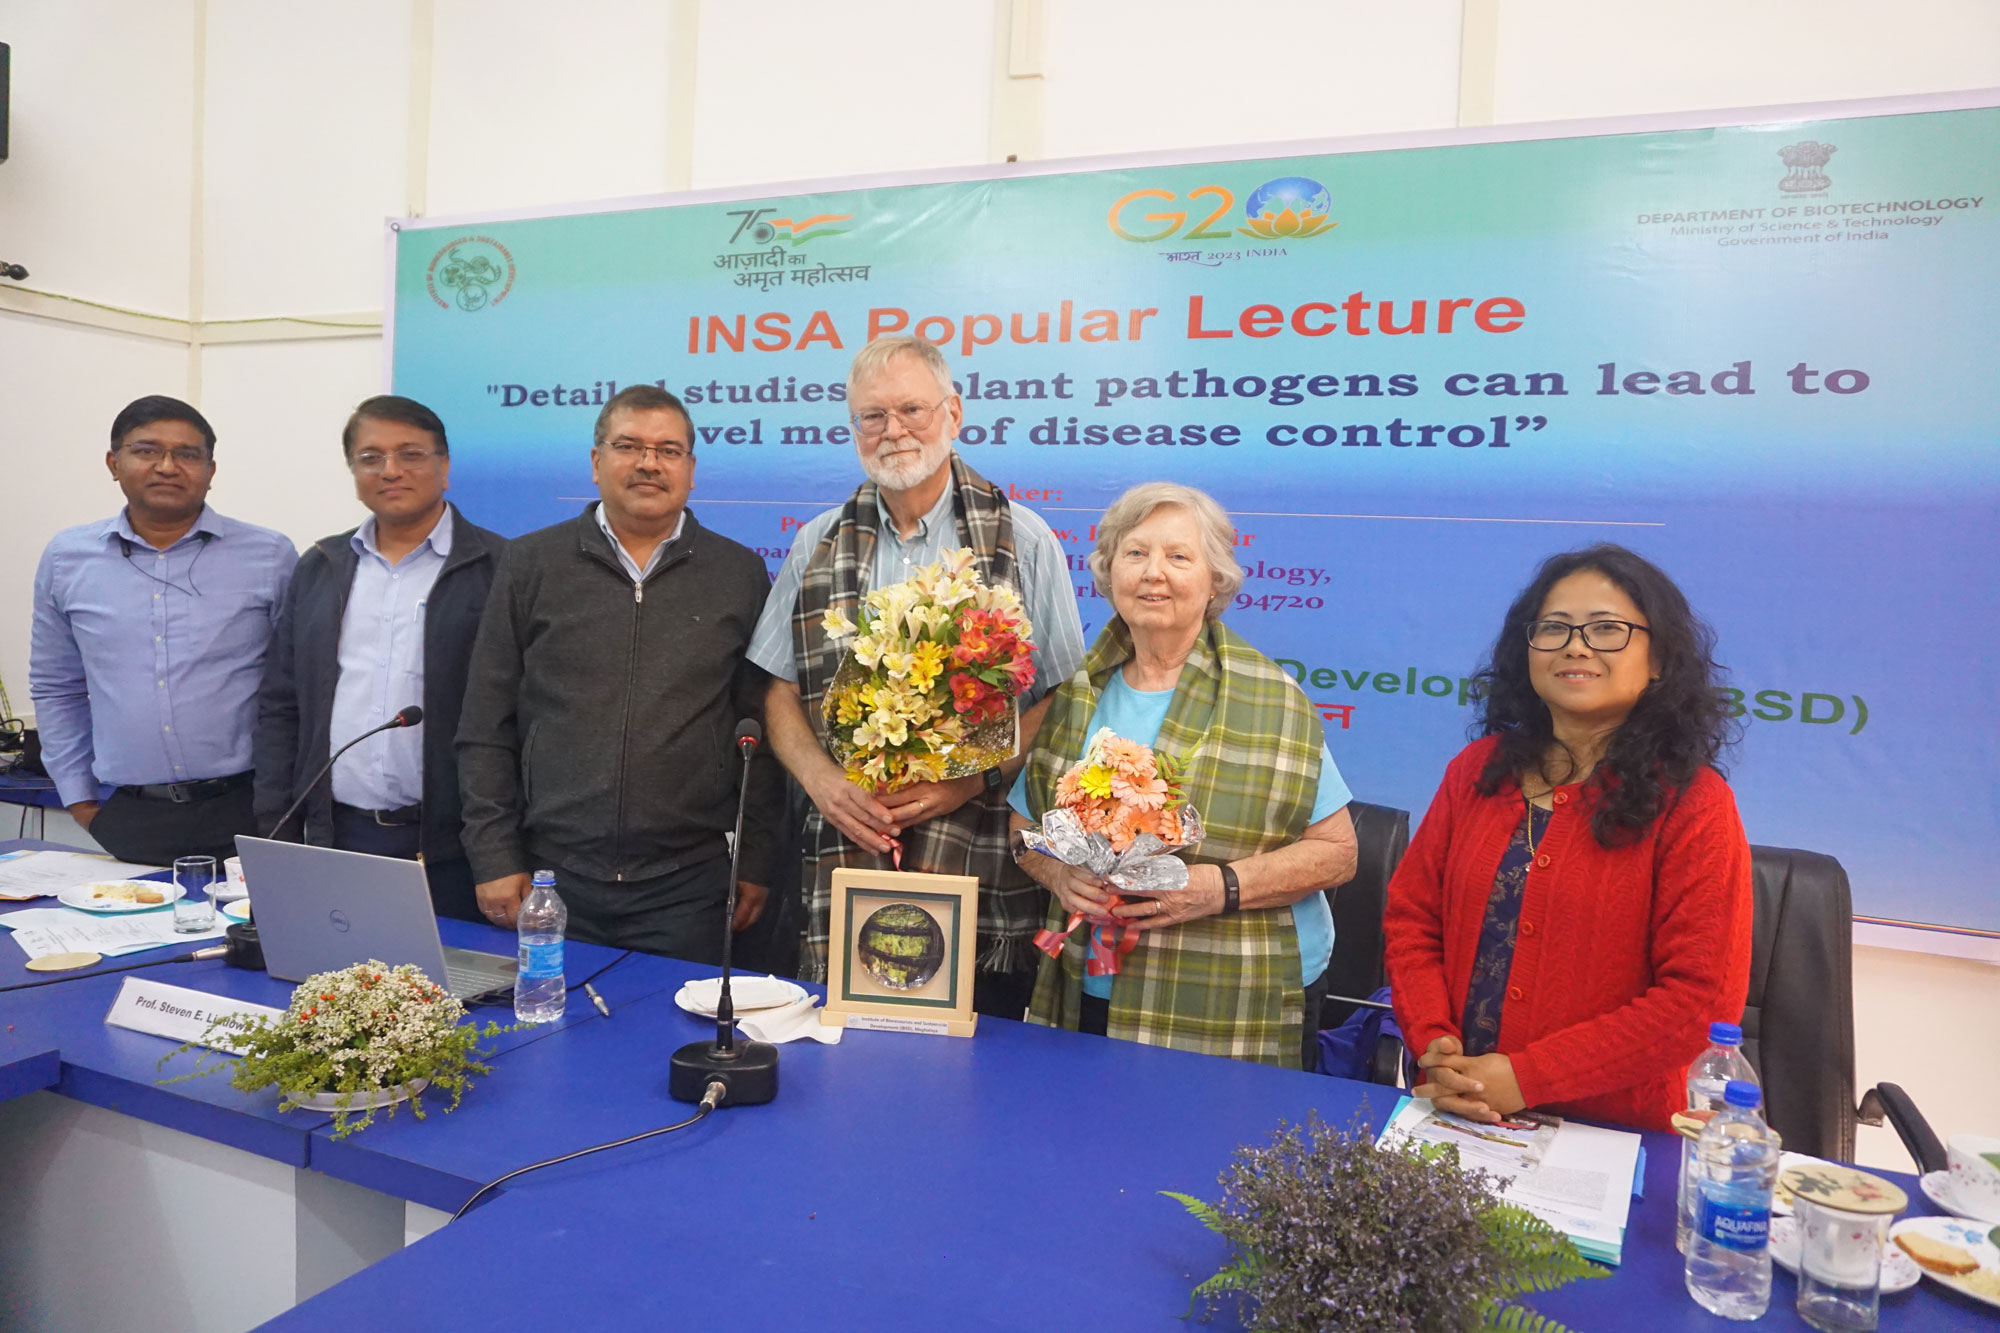 INSA Popular Lecture